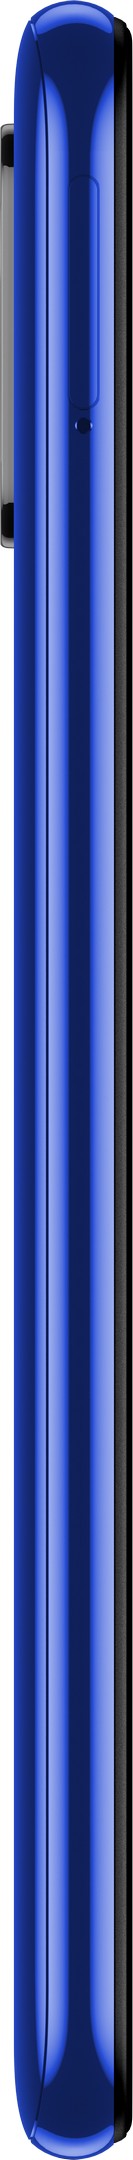 Smartphone Xiaomi Mi A3 4/64  Dual SIM 6.08 Blue